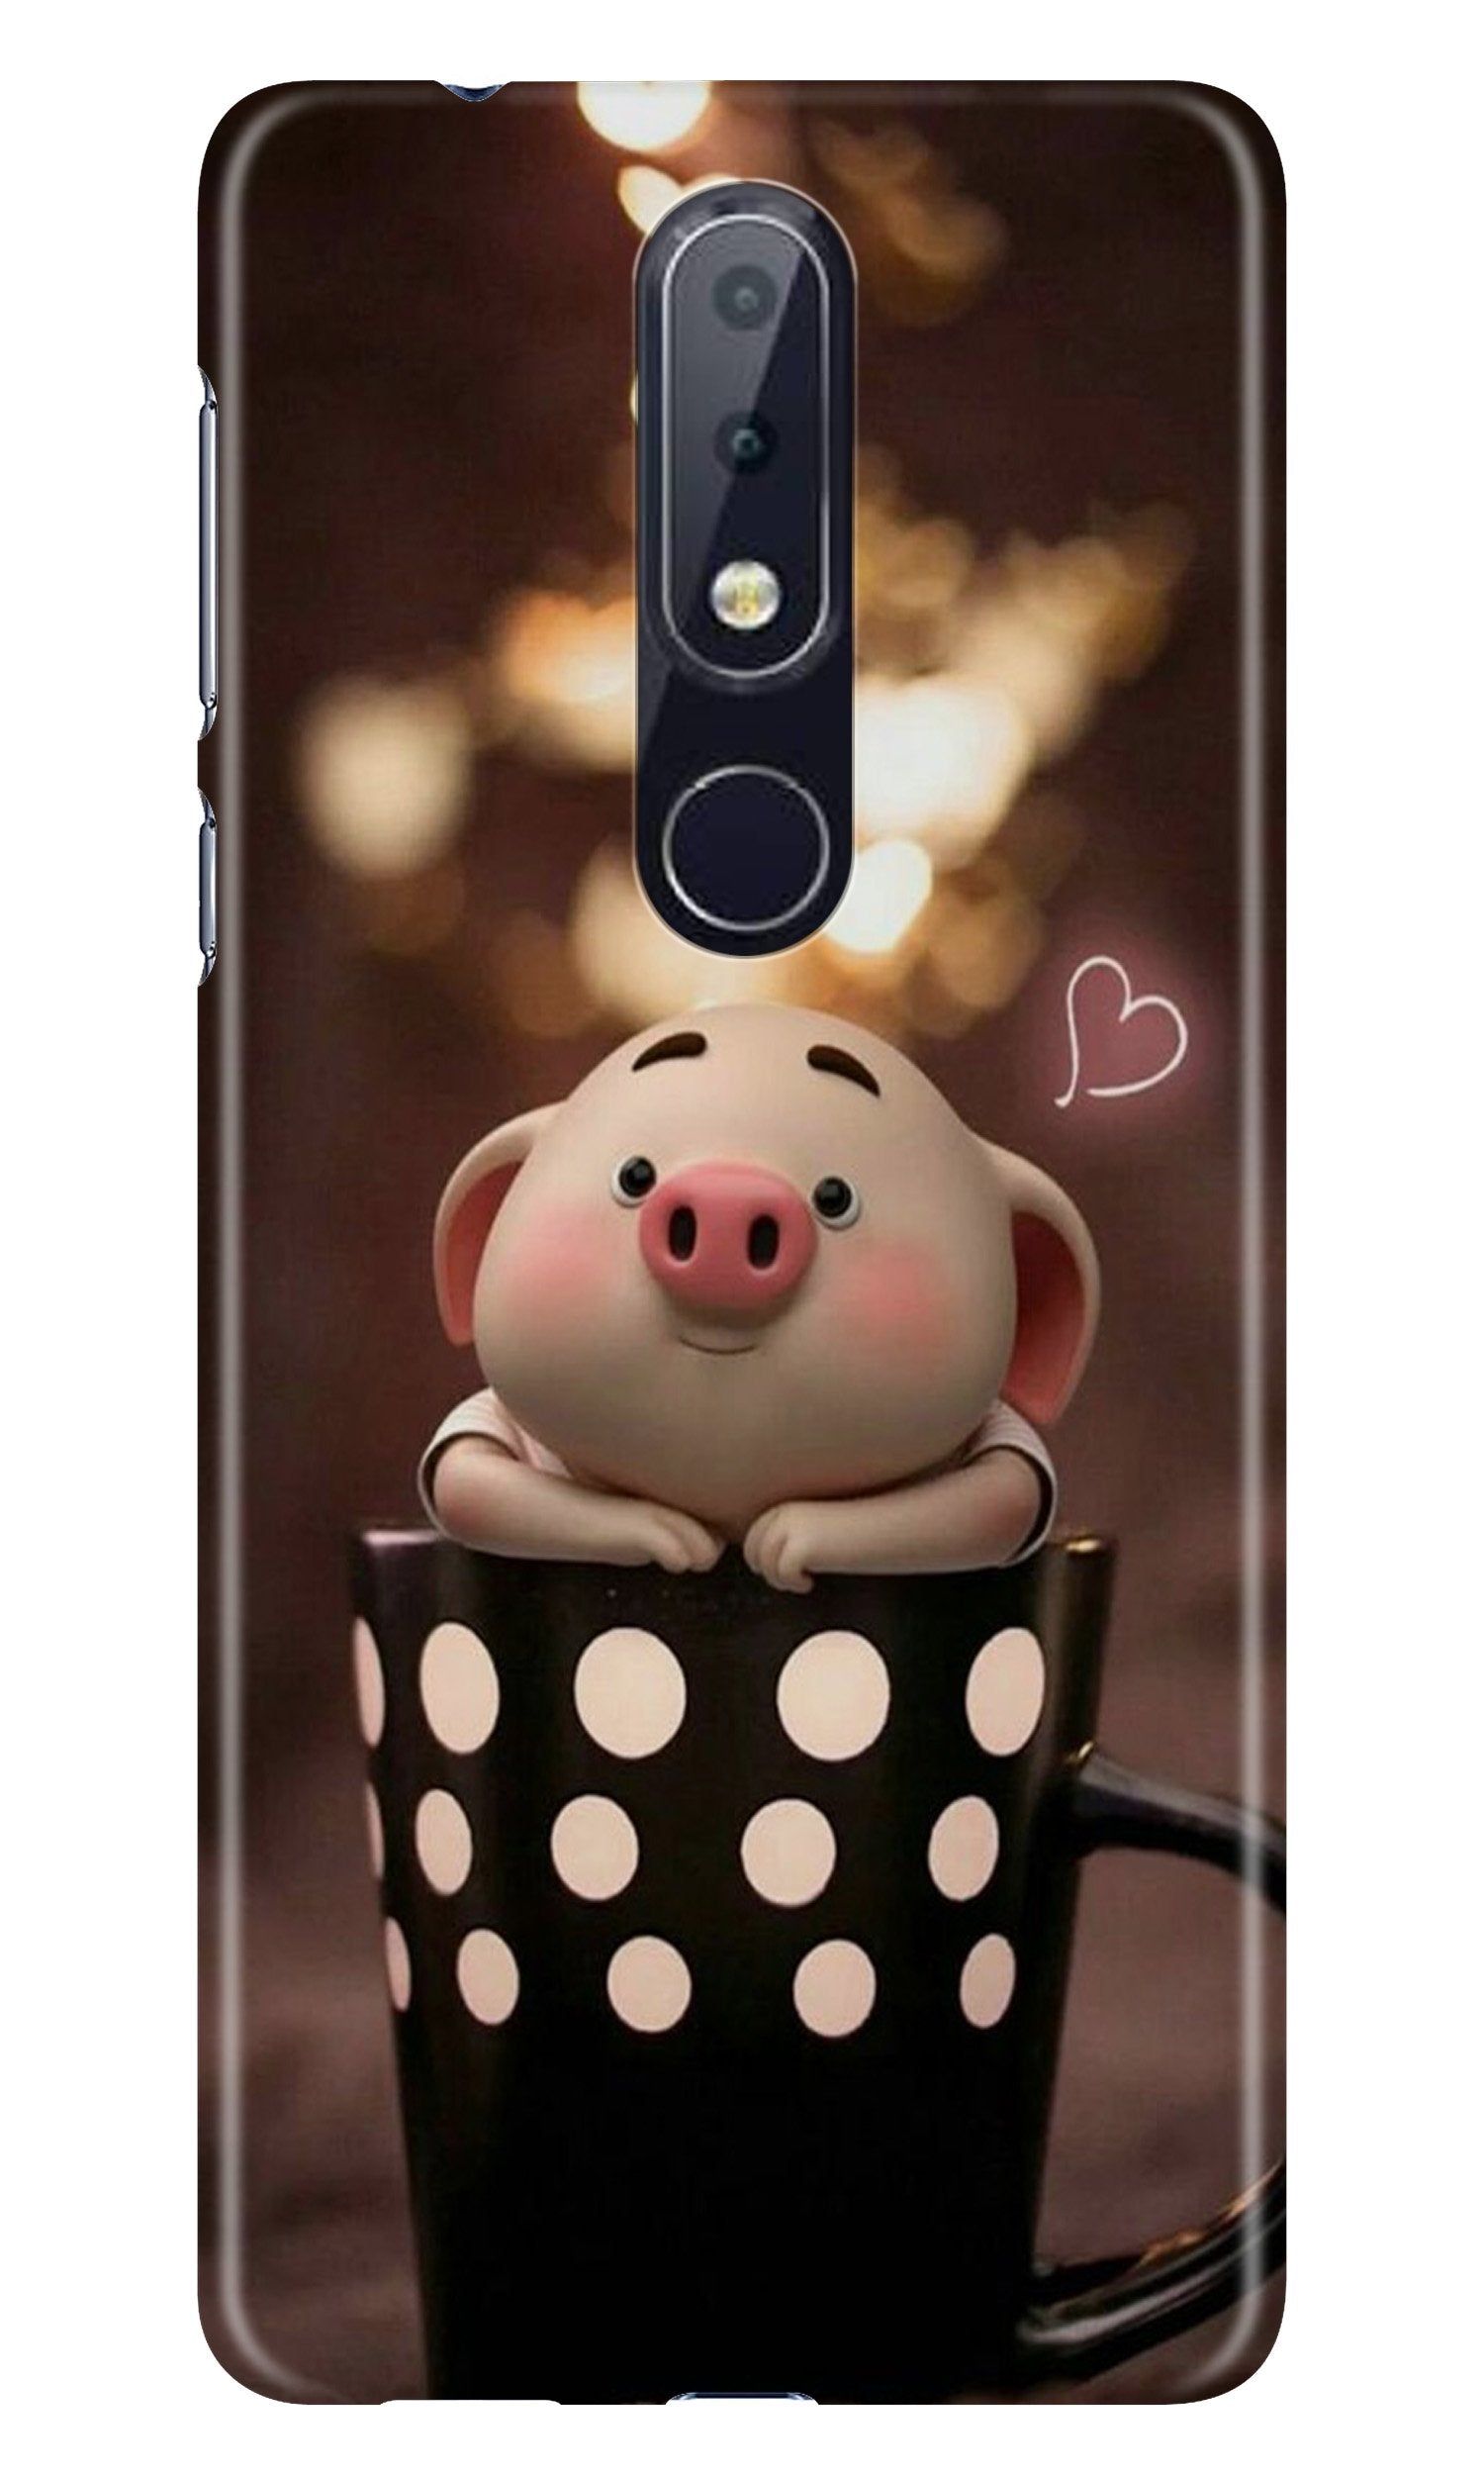 Cute Bunny Case for Nokia 4.2 (Design No. 213)